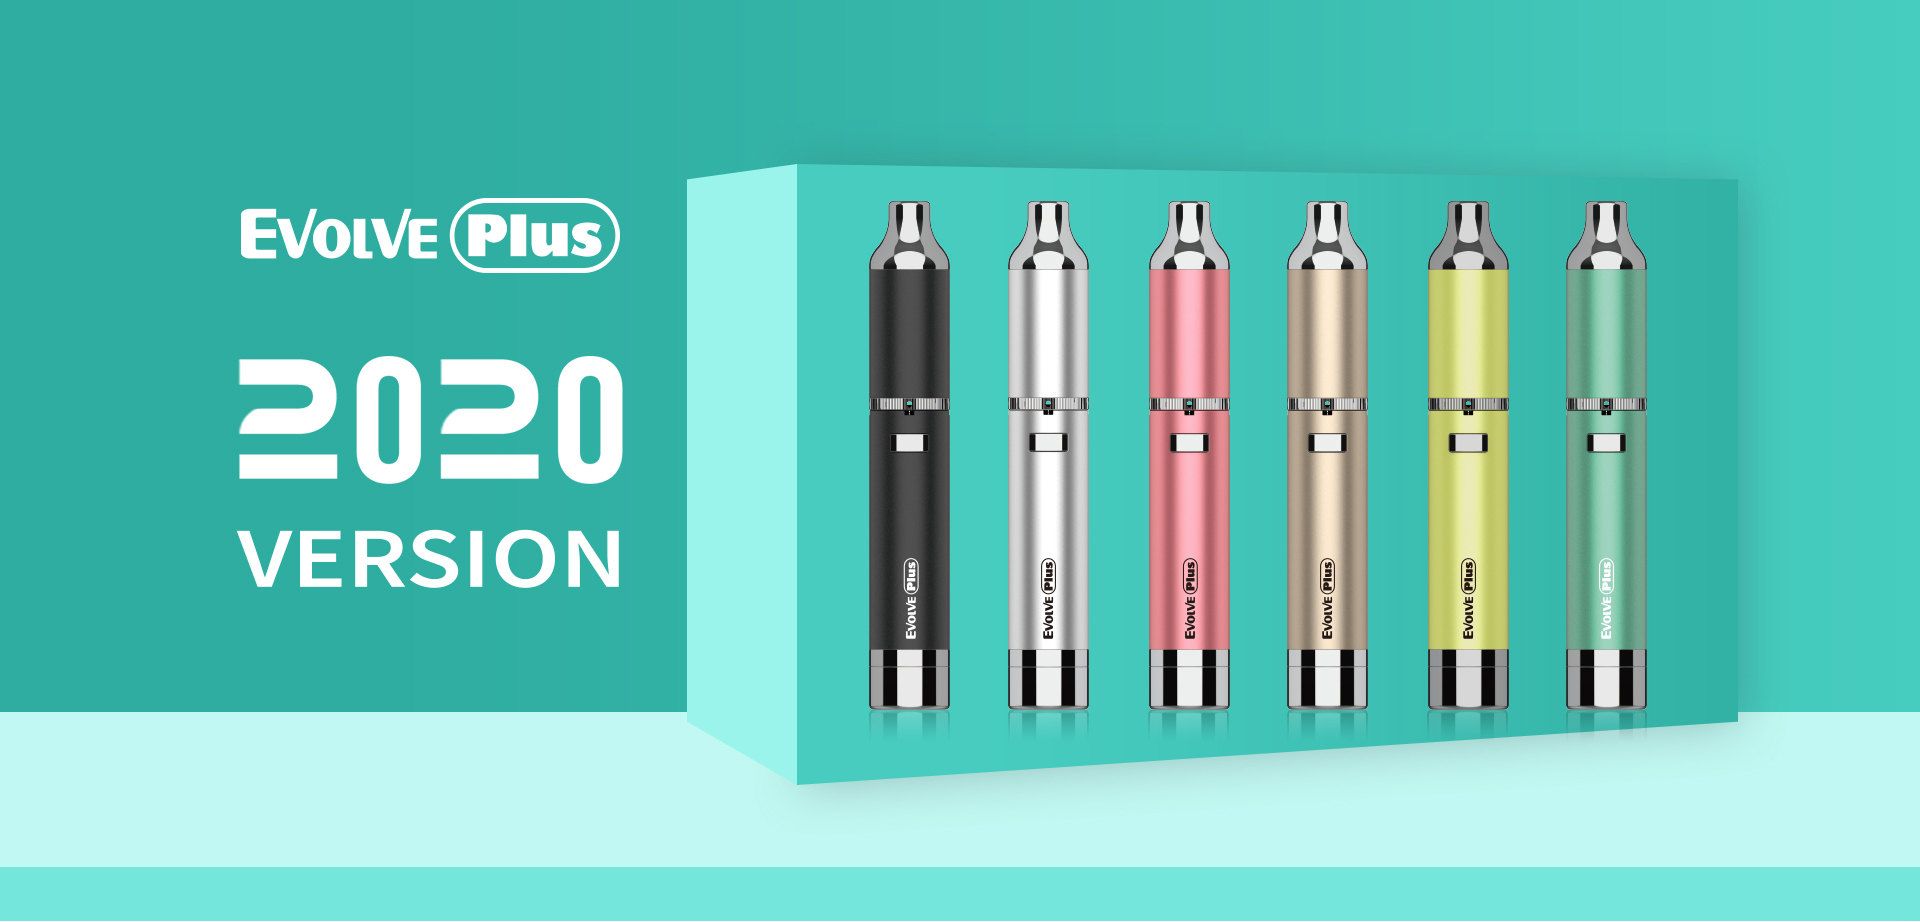 Yocan Evolve-Plus vaporizer pen 2020 version is a uniquely advanced vape pen.